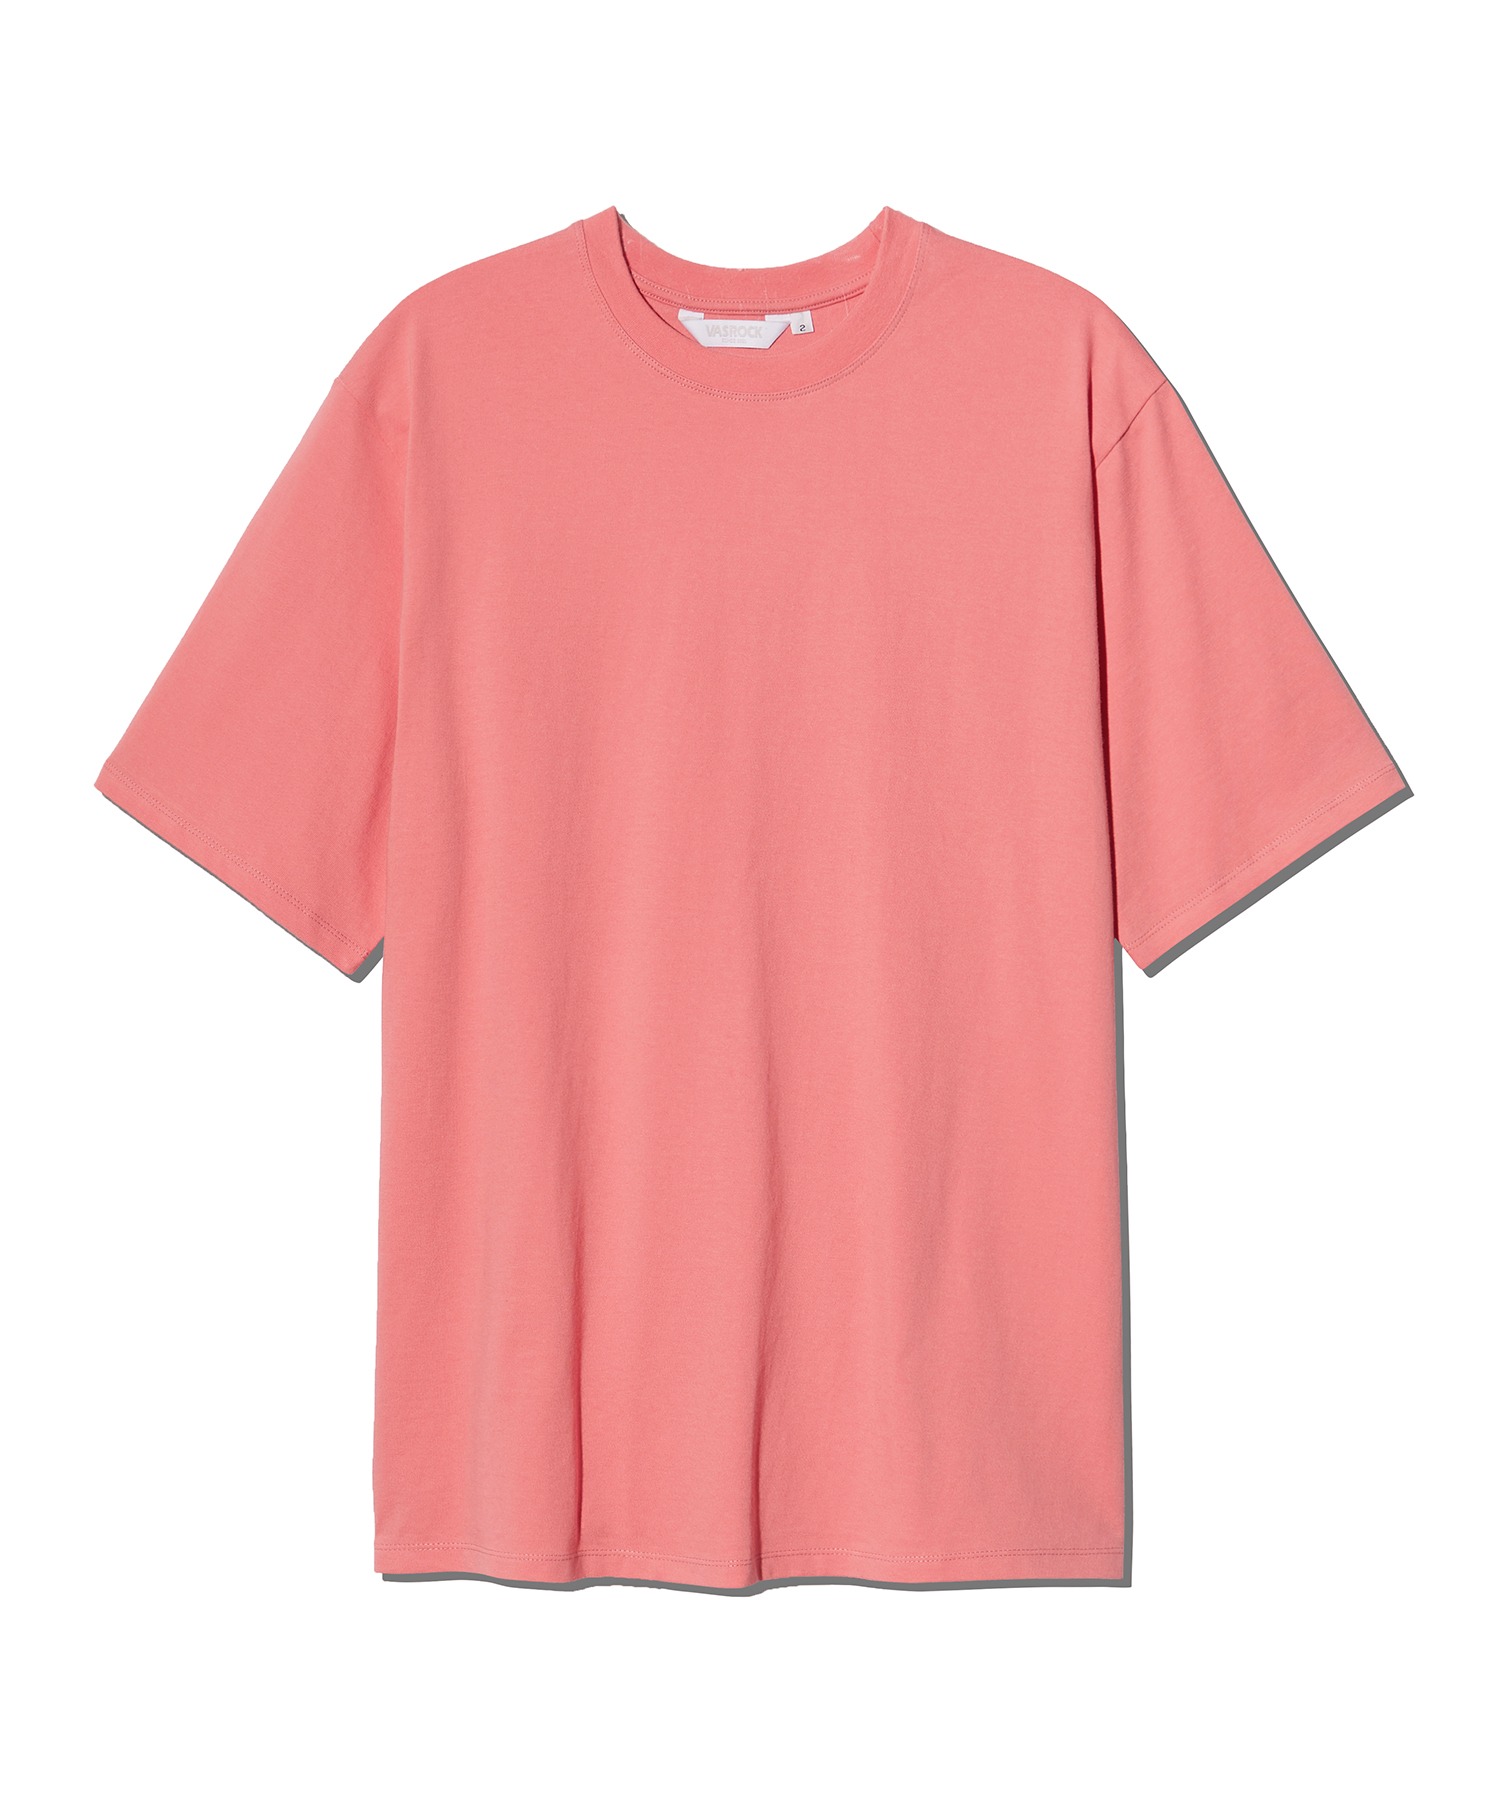 VASROCK,Side Square Short Sleeve T-shirt Pink